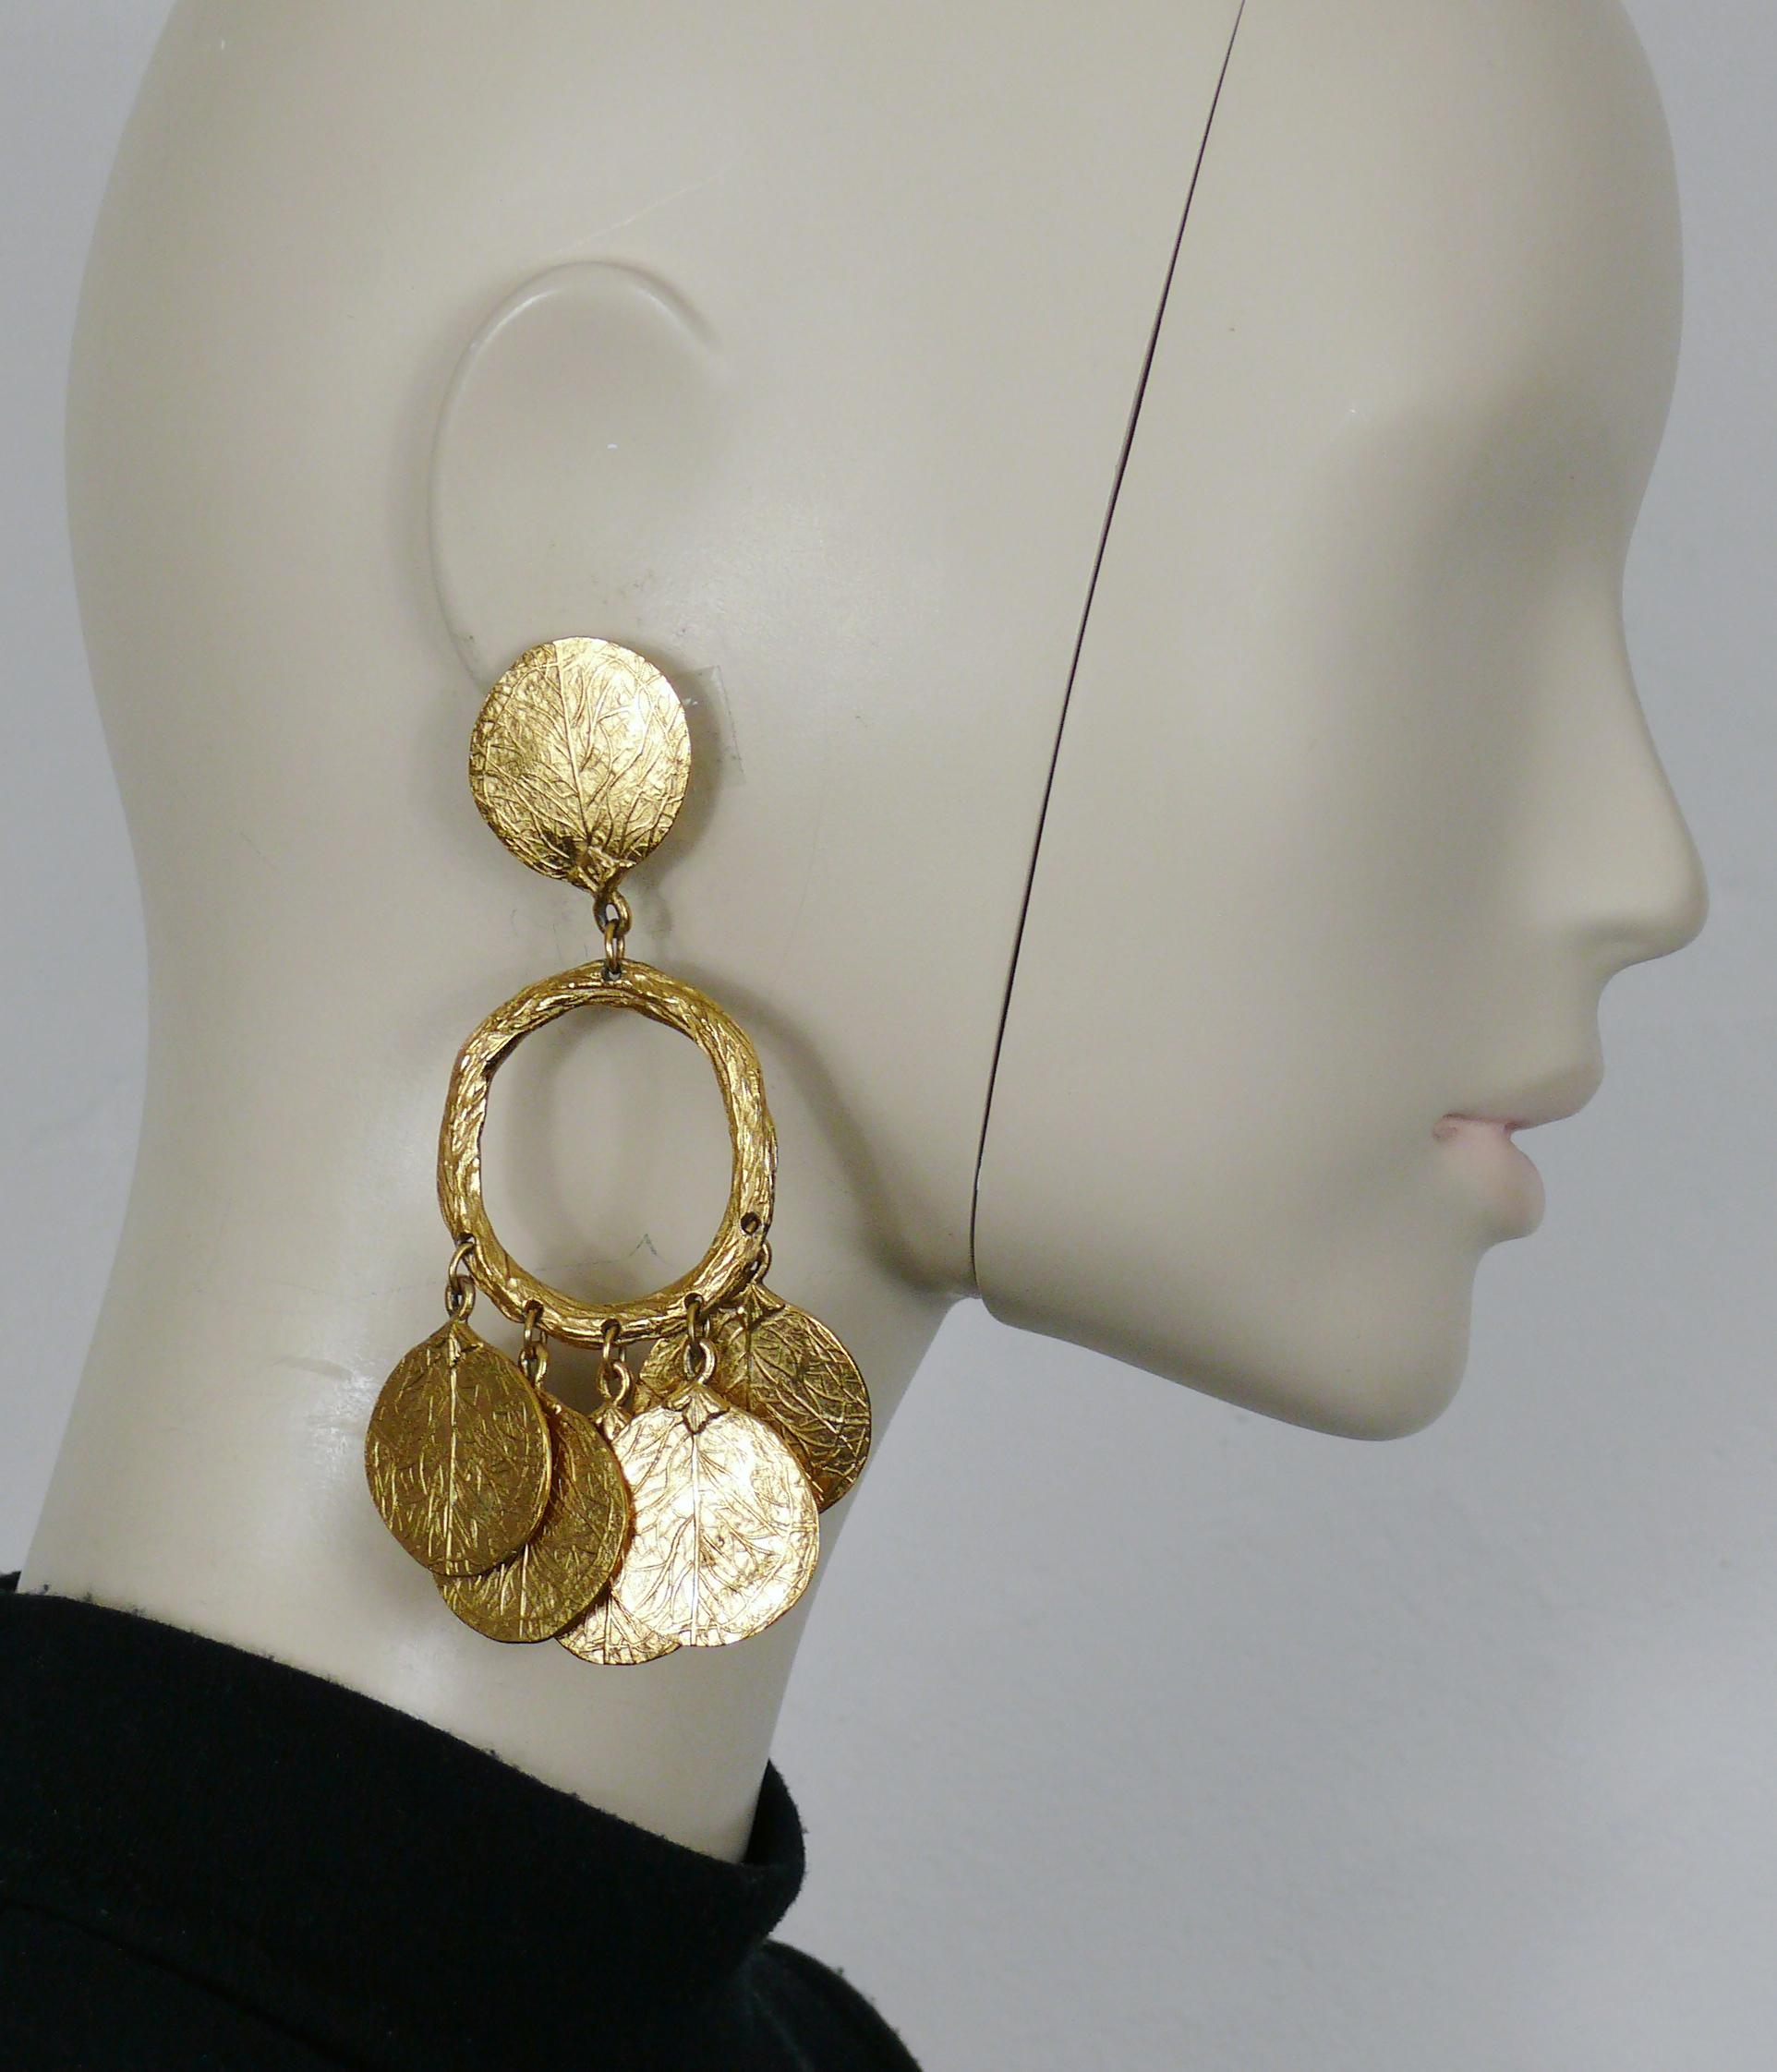 CHARLES JOURDAN - Boucles d'oreilles pendantes (clip-on) vintage, texturées et dorées, avec des breloques en forme de feuilles.

Embossé CHARLES JOURDAN Paris.

Mesures indicatives : hauteur env. 11 cm (4.33 inches) / largeur max. env. 6.5 cm (2.56